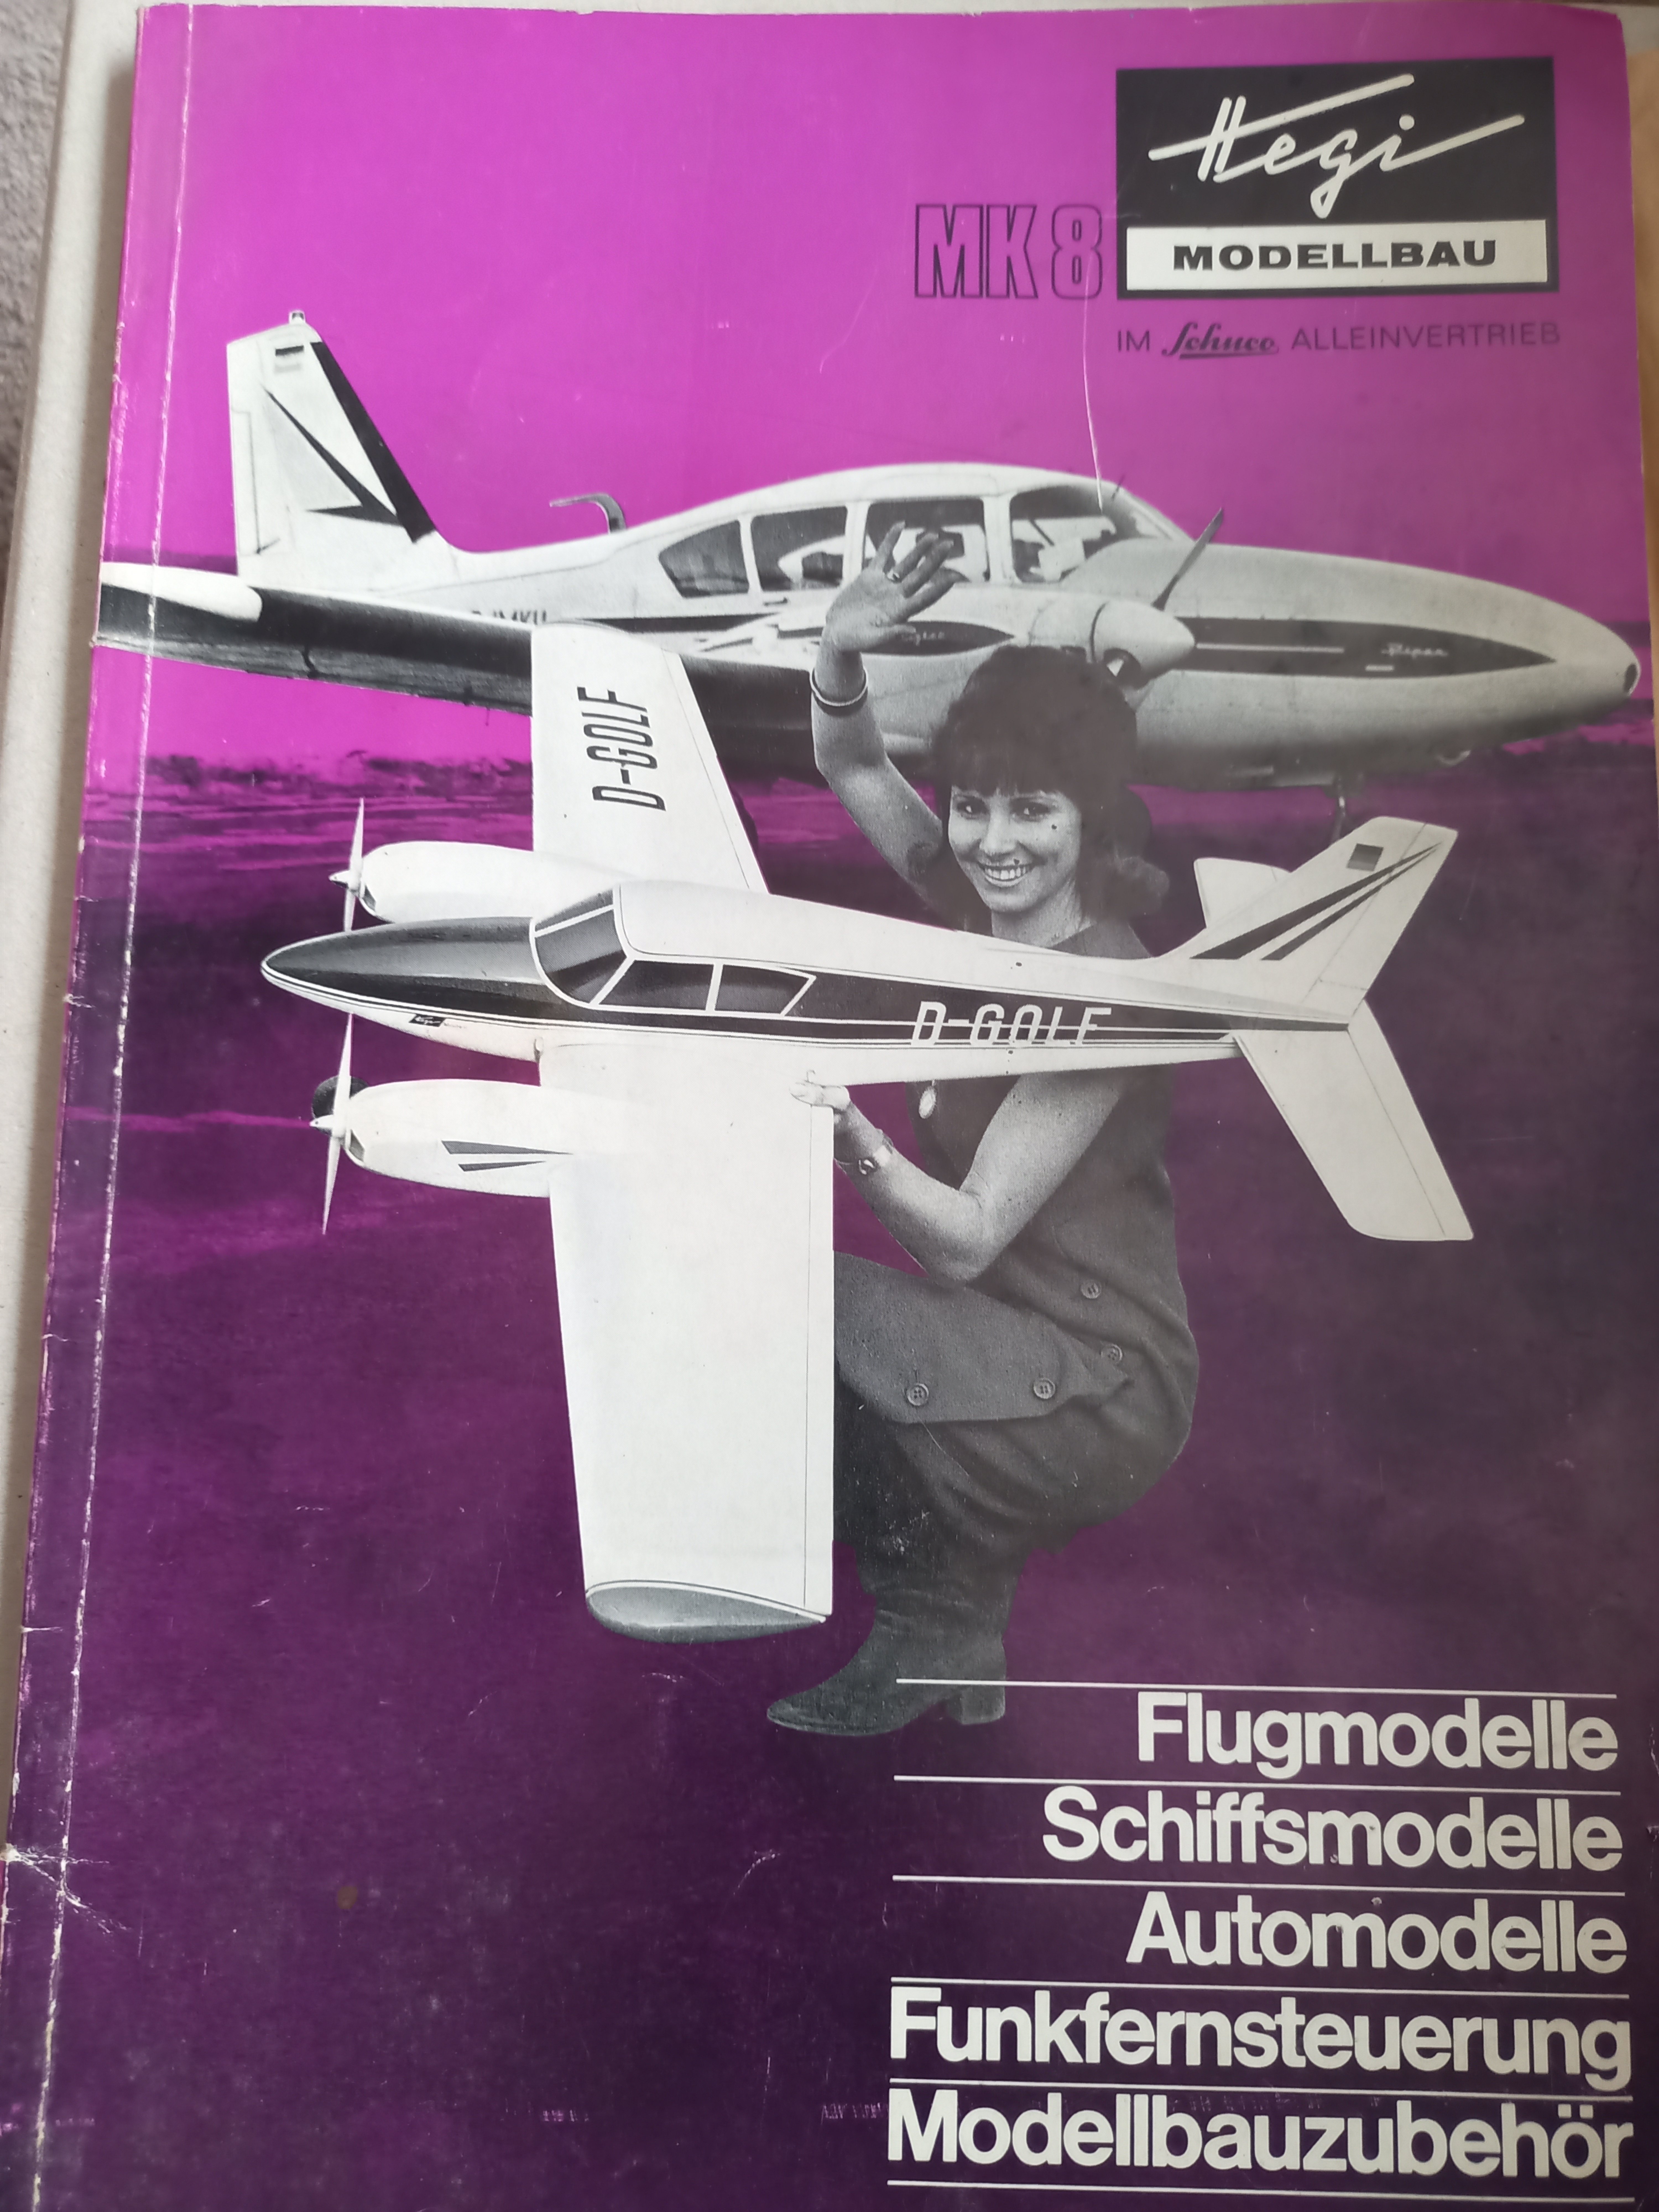 Gesamtkatalog Schuco Hegi 1969 (Deutsches Segelflugmuseum mit Modellflug CC BY-NC-SA)